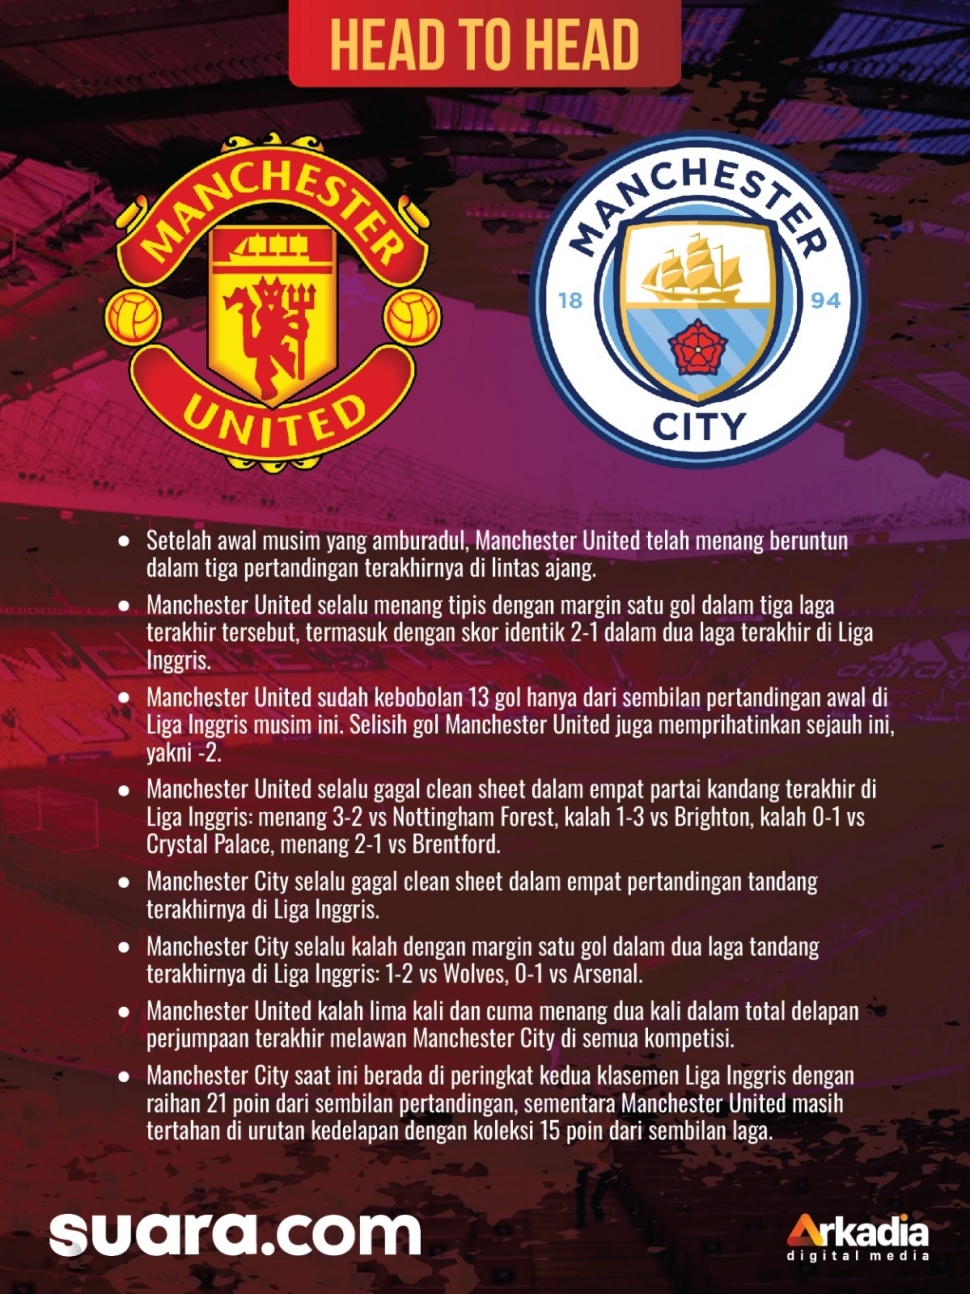 Infografis Manchester United vs Manchester City. [Suara.com]